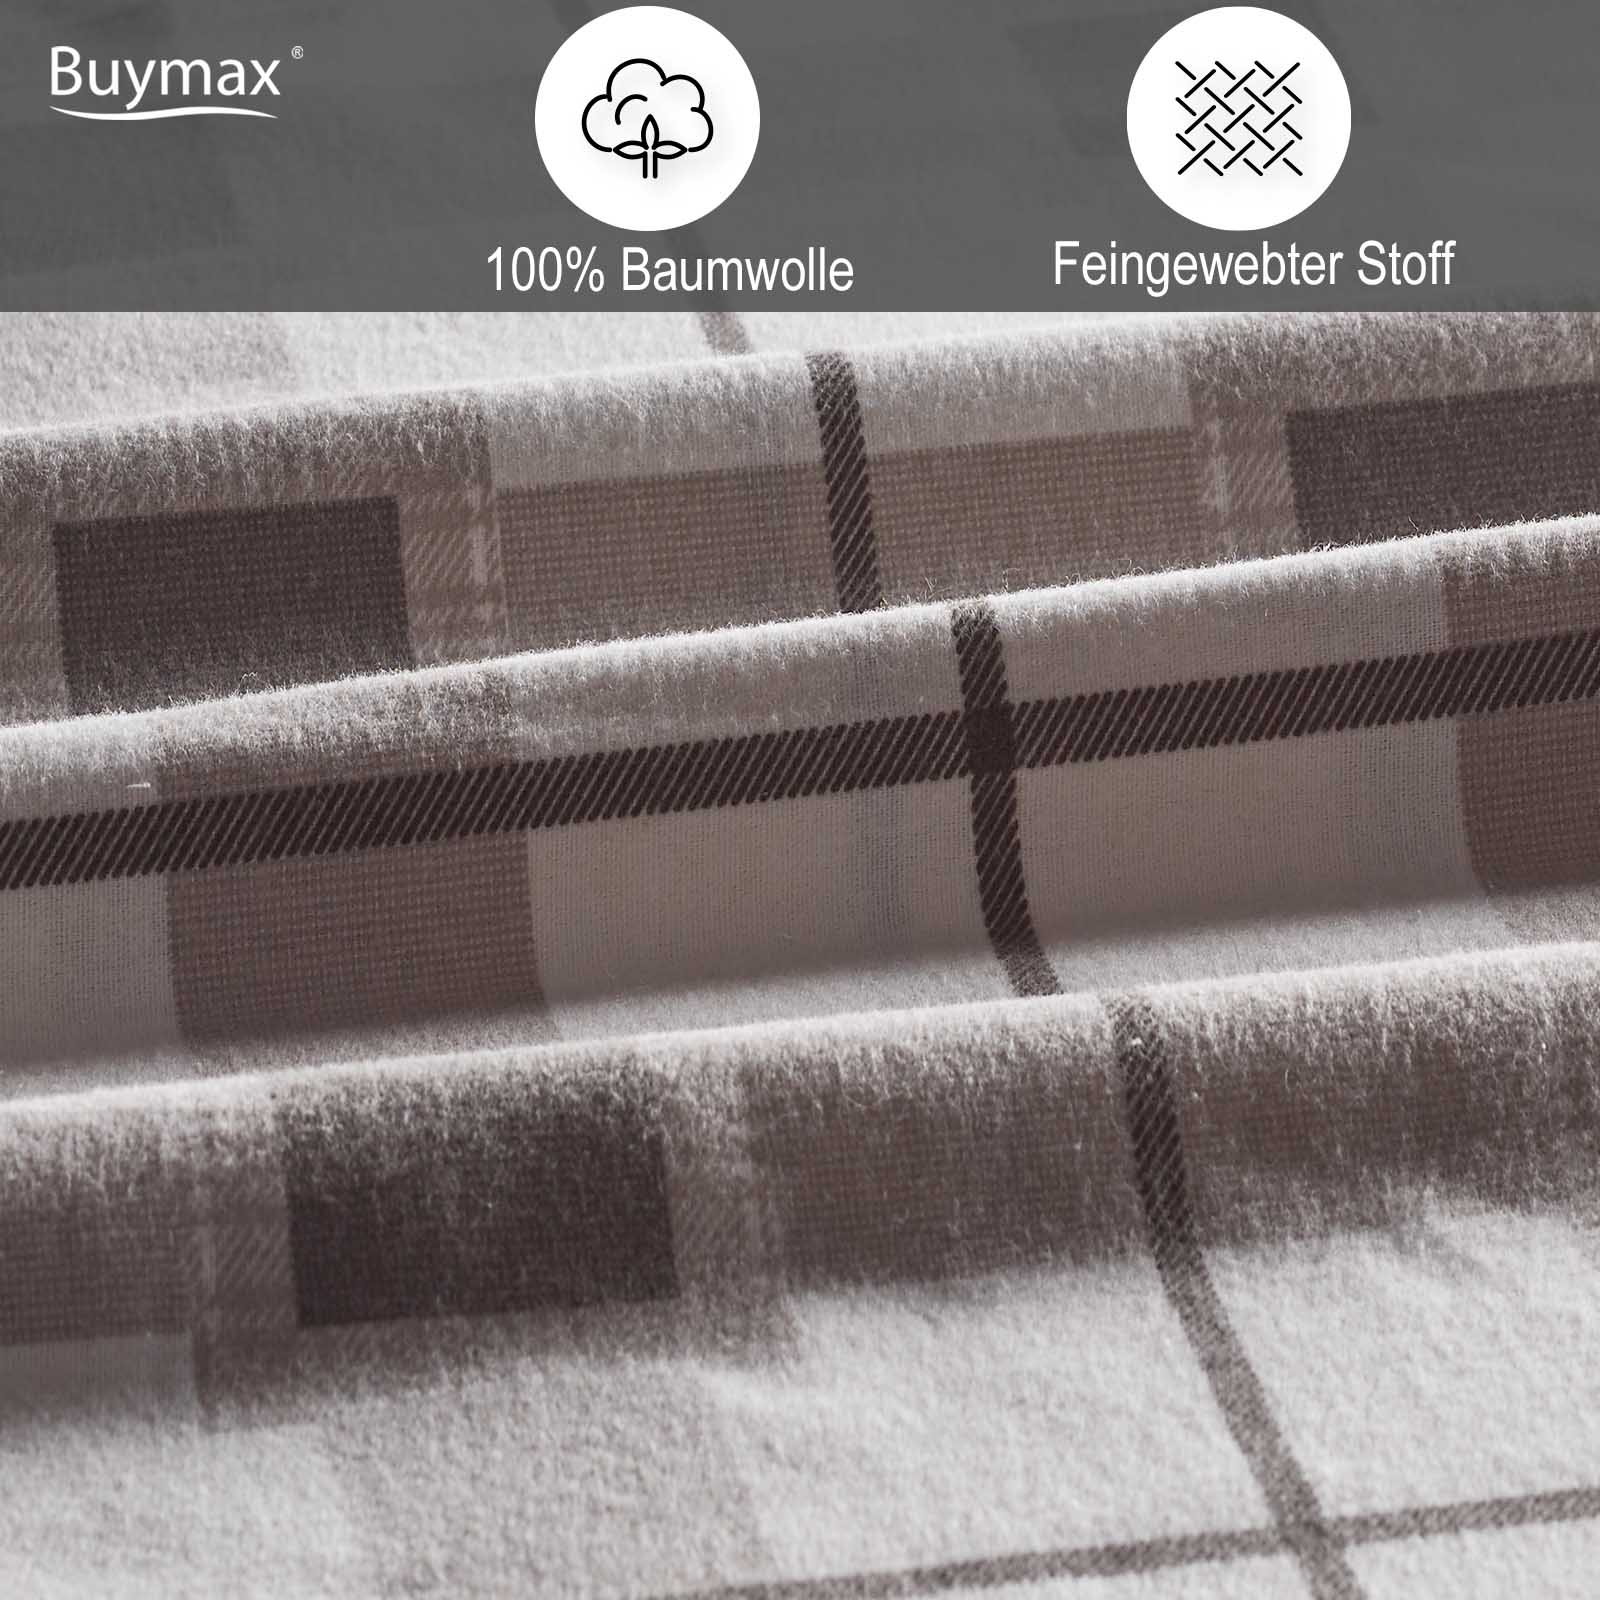 Biber Bettwäsche 100% Baumwolle "nuevo" - Buymax